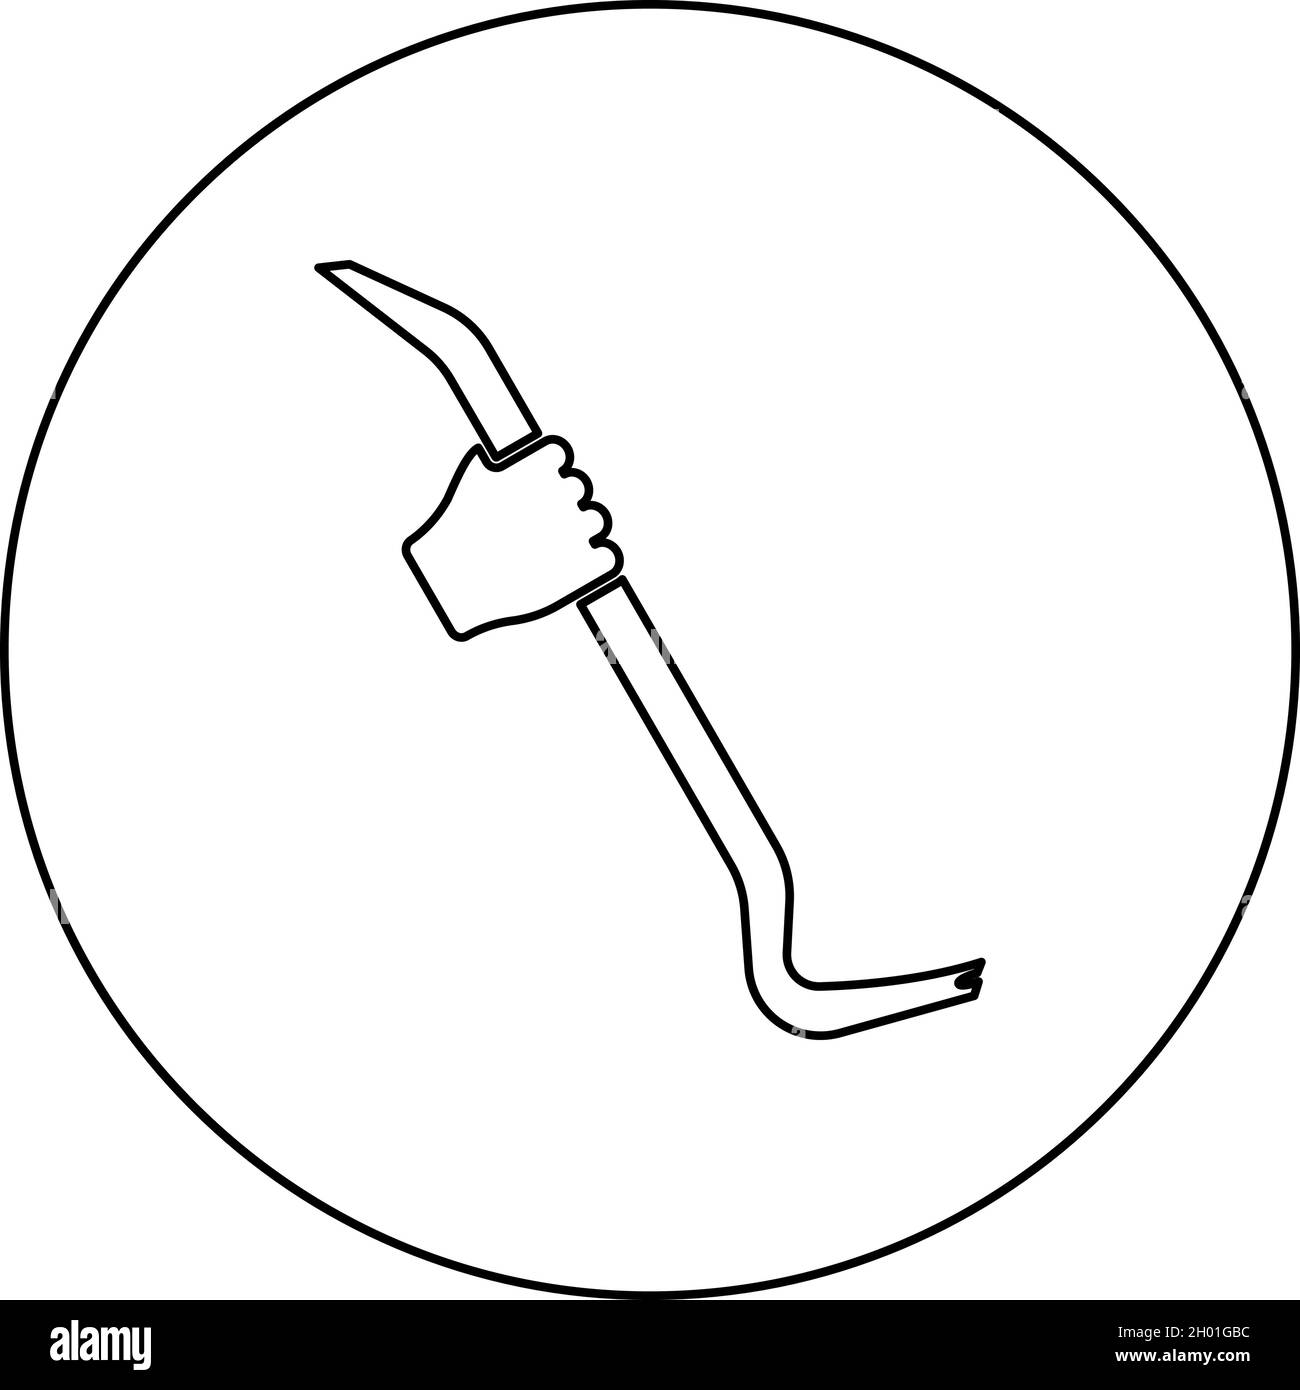 Outil de maintien du pied de biche utilisez le bras avec une icône de barre multifonction en cercle rond noir illustration vectorielle style Uni Illustration de Vecteur